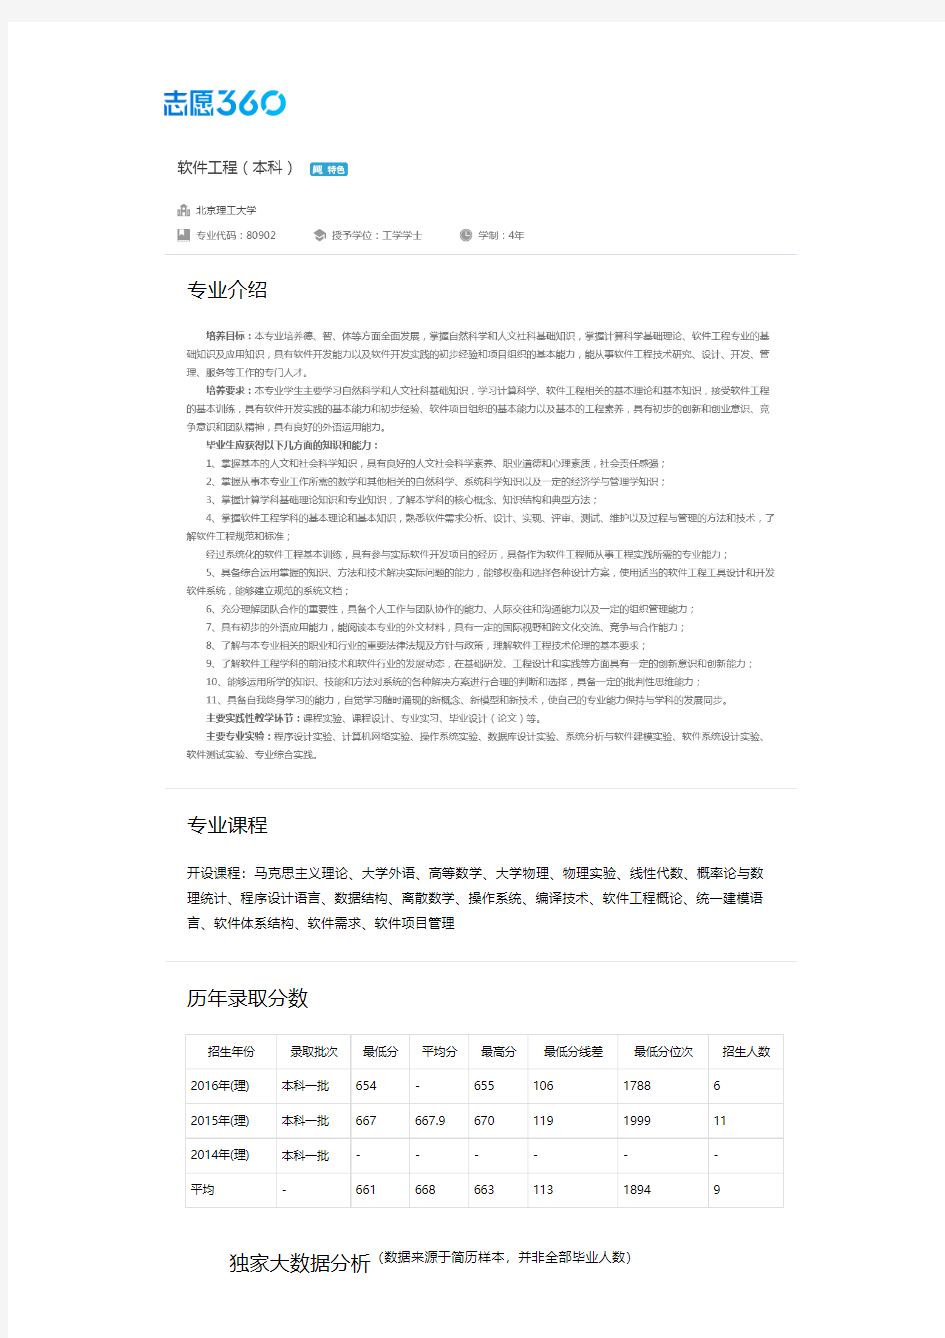 2013-2017年北京理工大学软件工程专业毕业生就业大数据报告